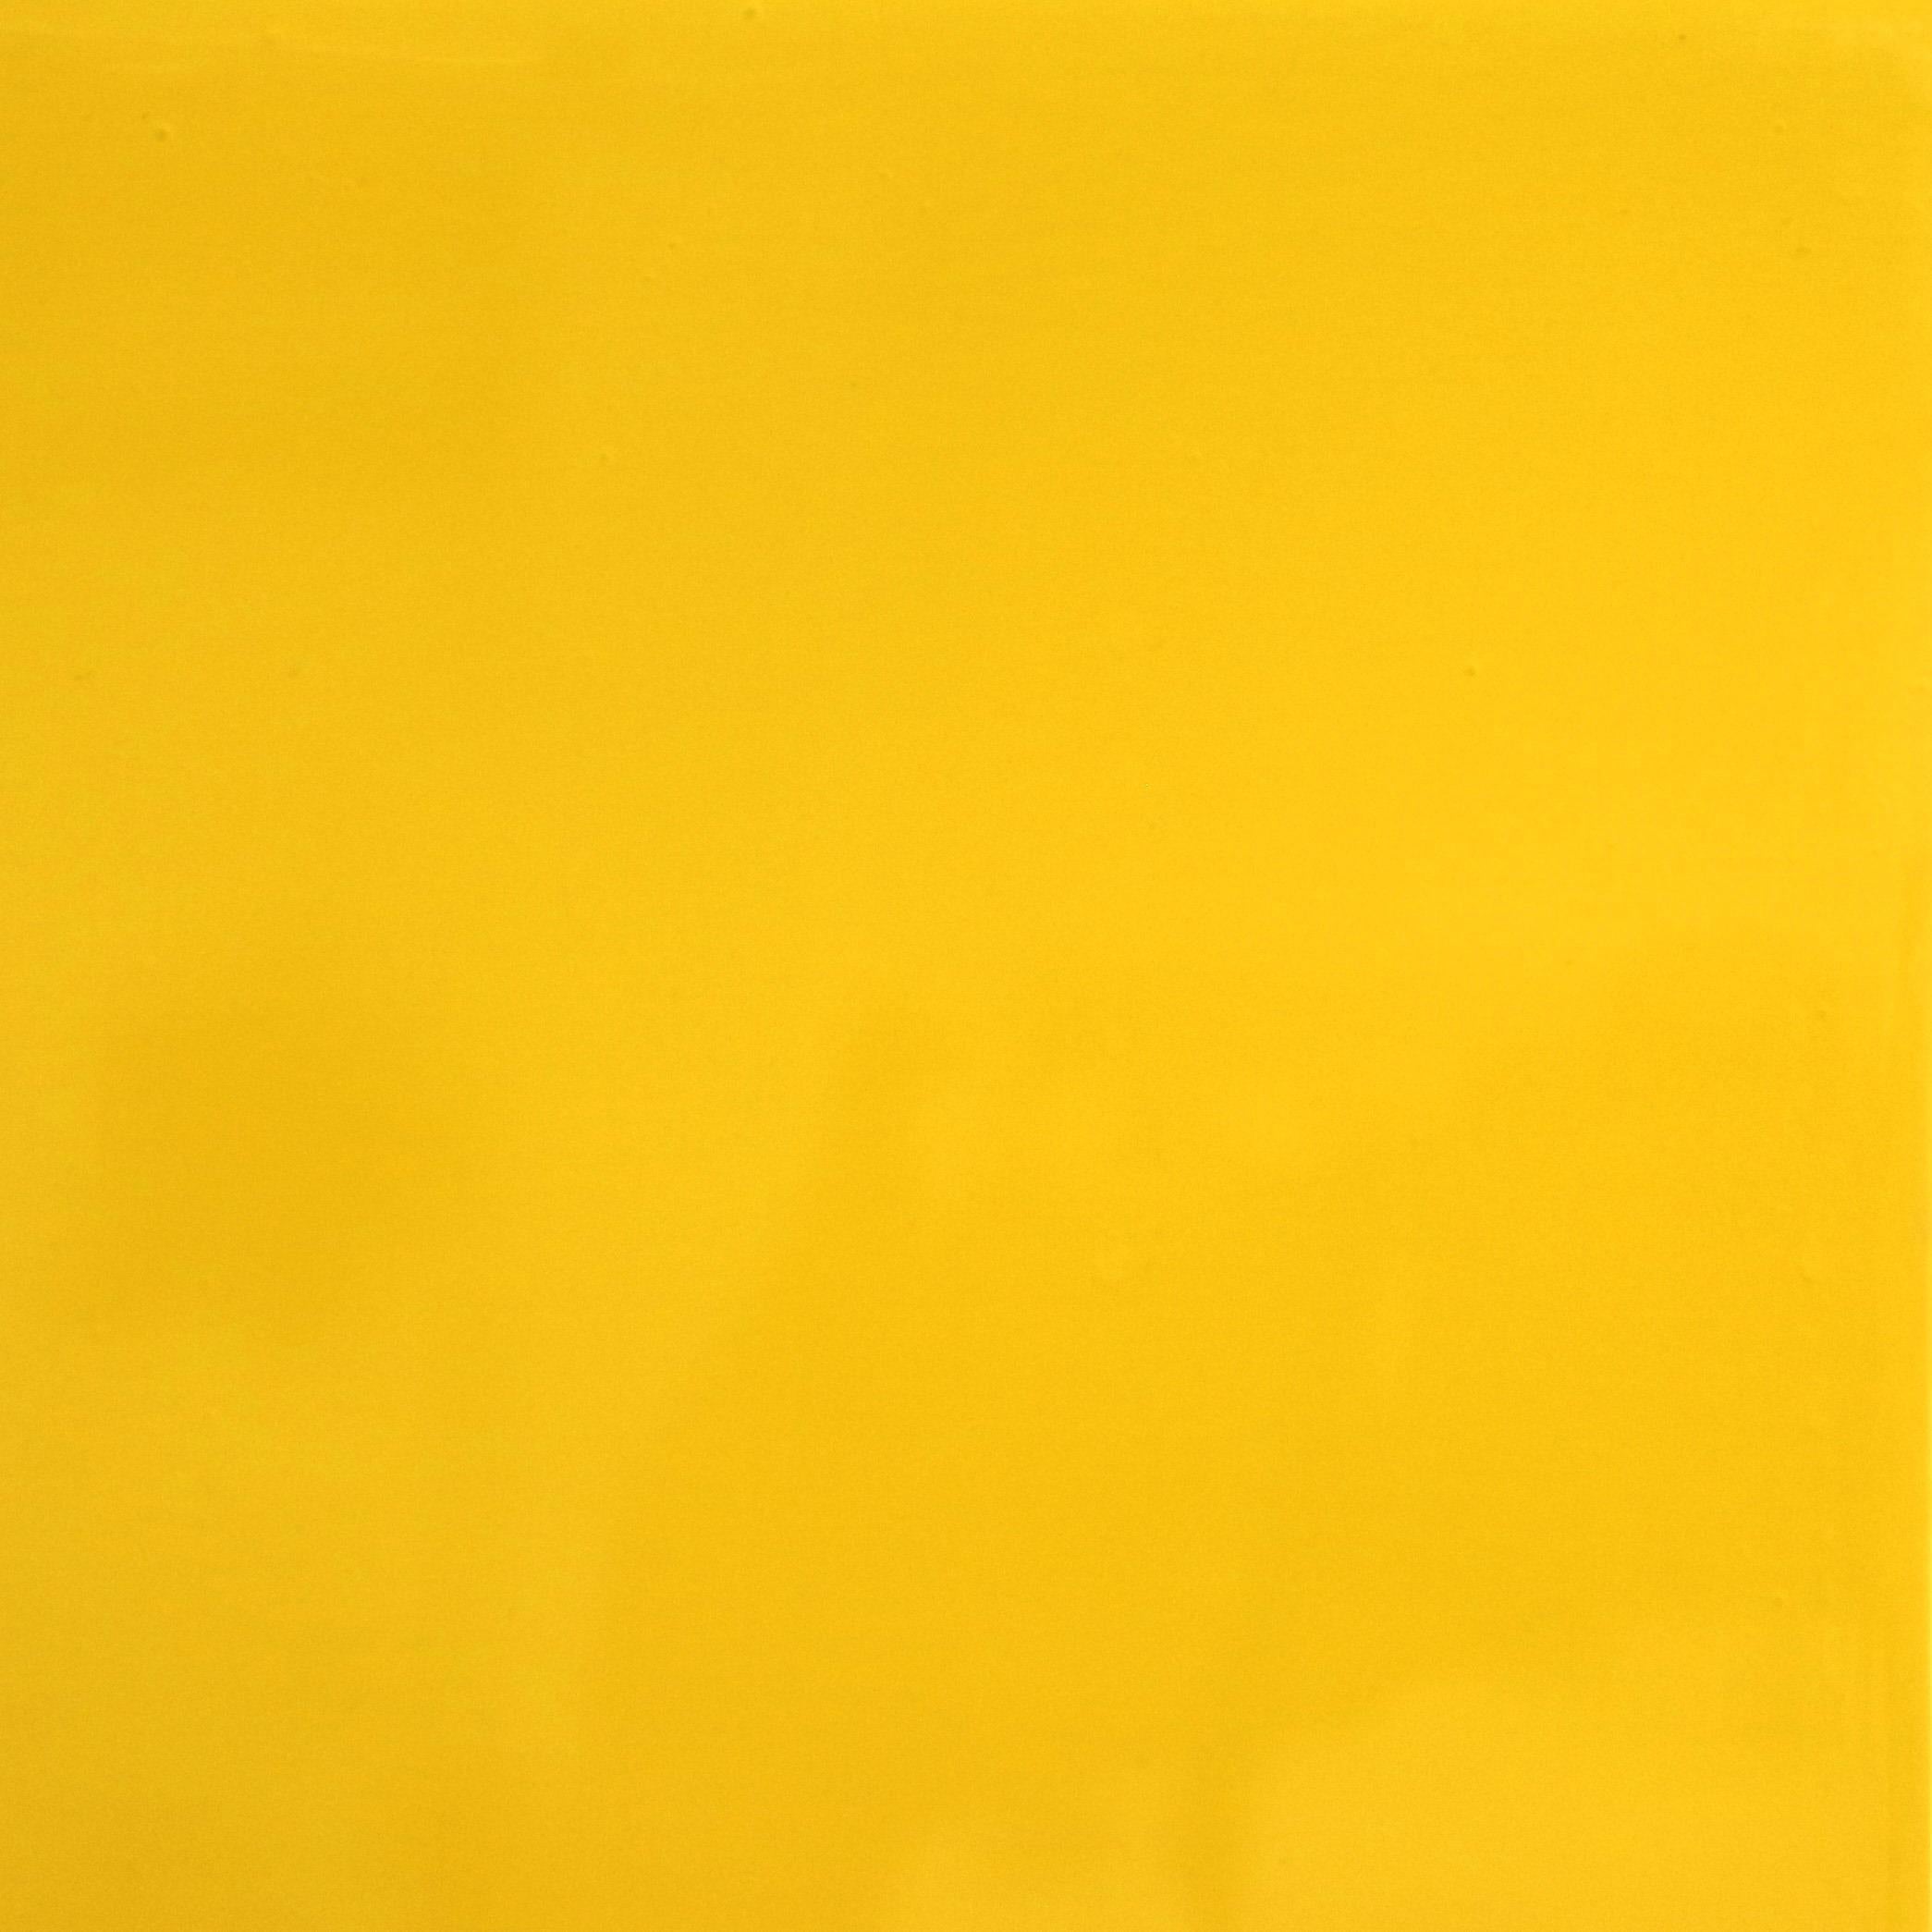 Will Beger et ses peintures contemporaines-minimalistes adoptent une approche tout à fait unique de l'art AM Contemporary. Influencé par sa jeunesse et inspiré par la Nature, il capture sans effort une esthétique vibrante et bohème qui est sans